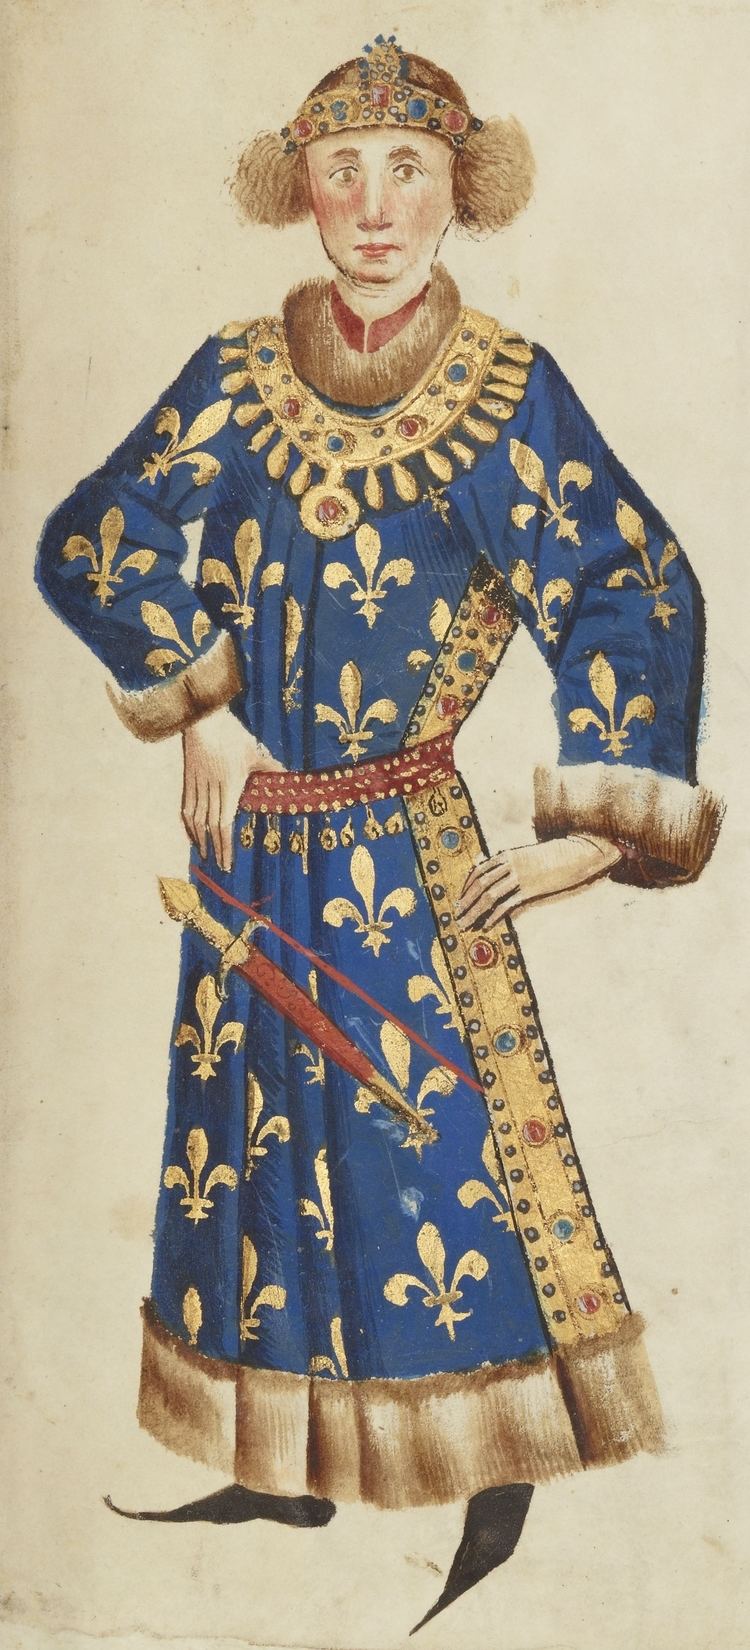 Louis II, Duke of Bourbon